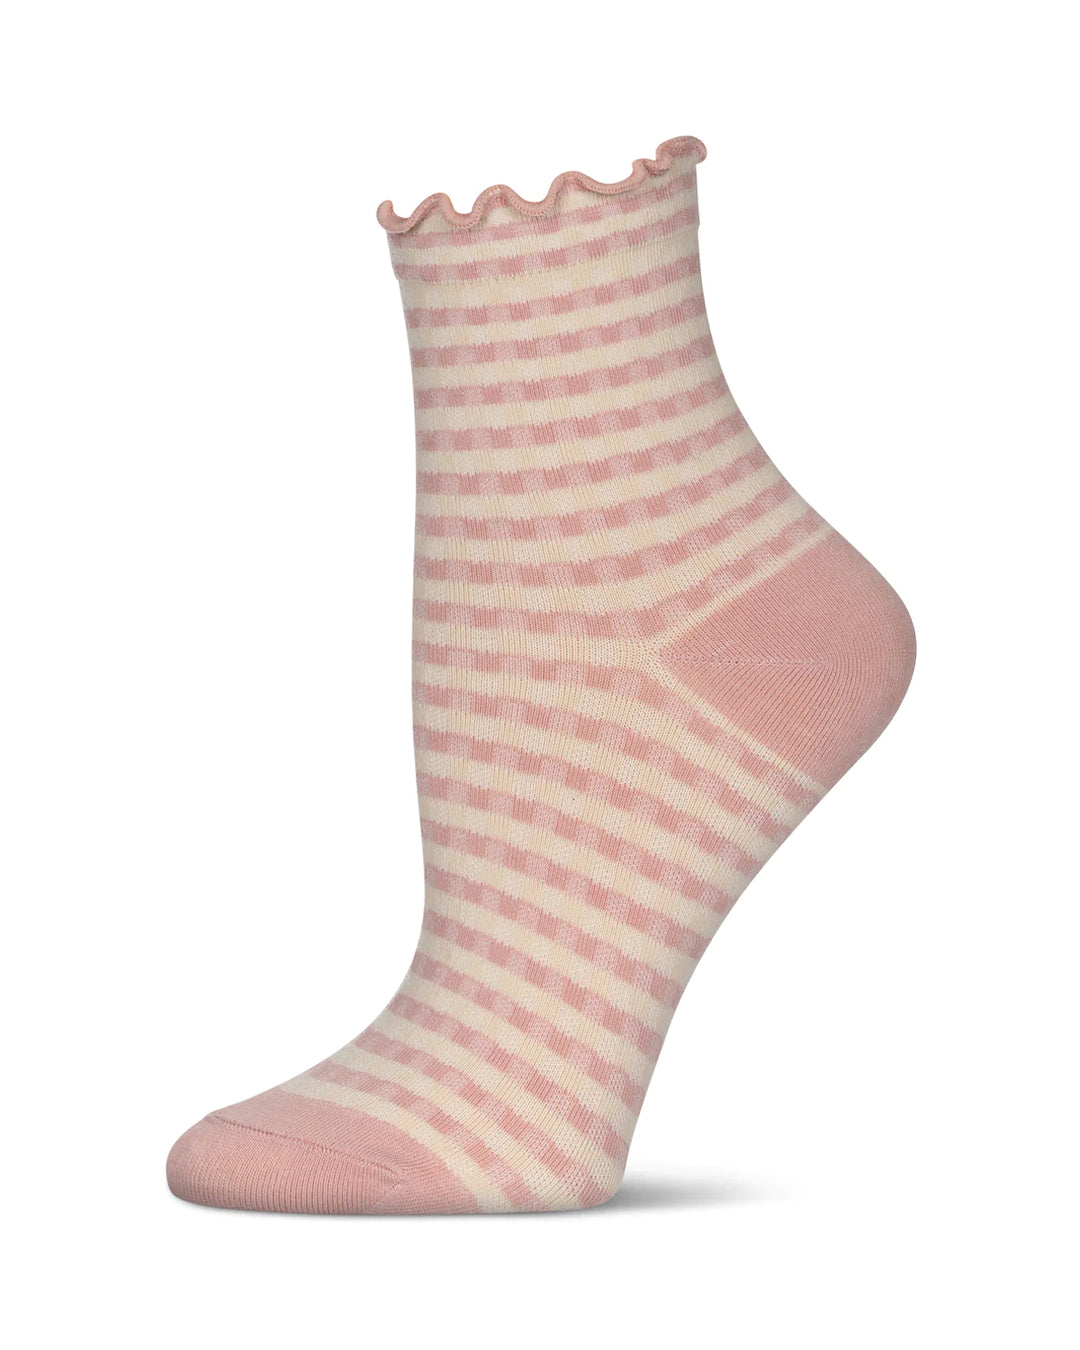 Gingham Ruffle Anklet Sock